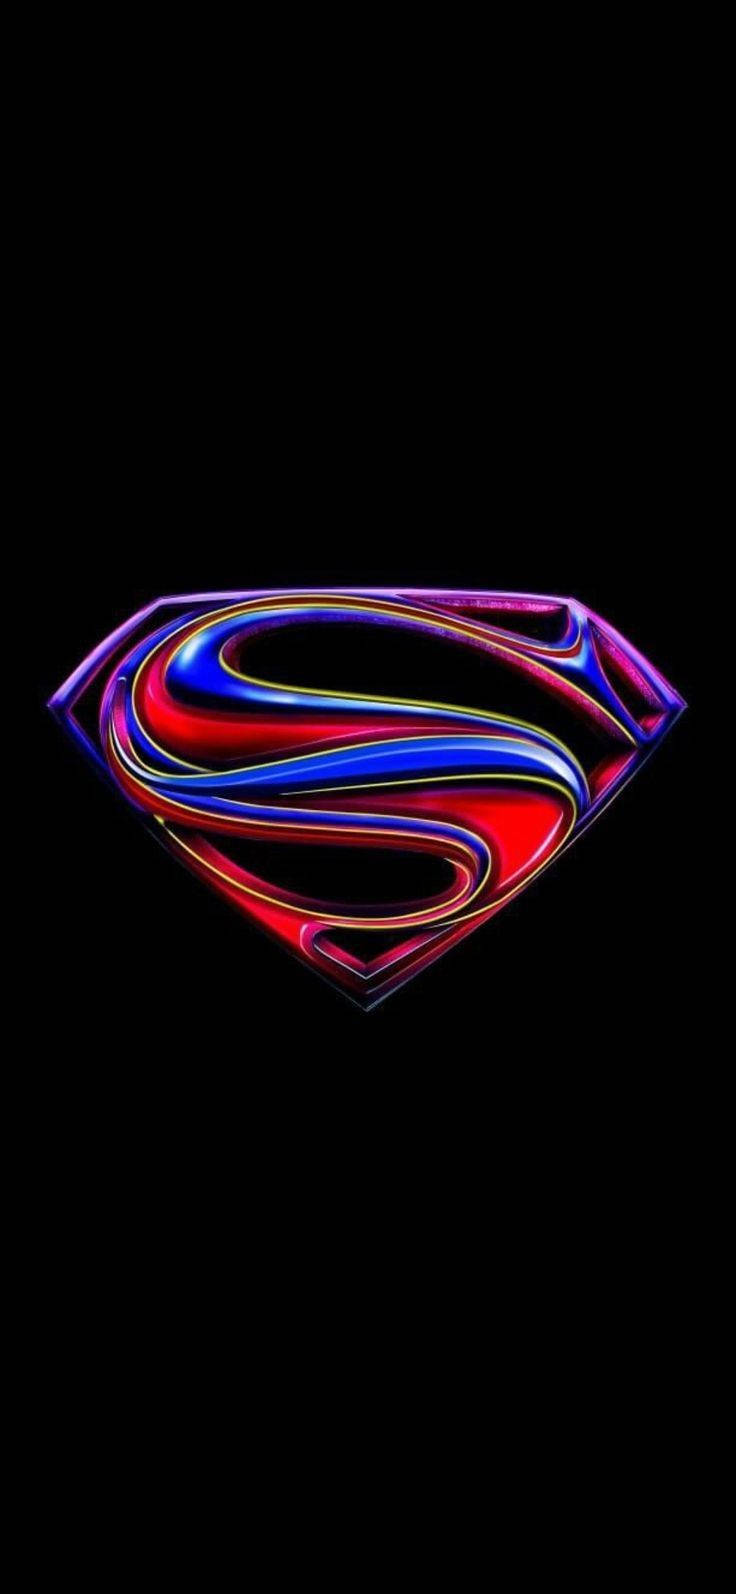 Download Colorful Metallic Superman Symbol iPhone Wallpaper